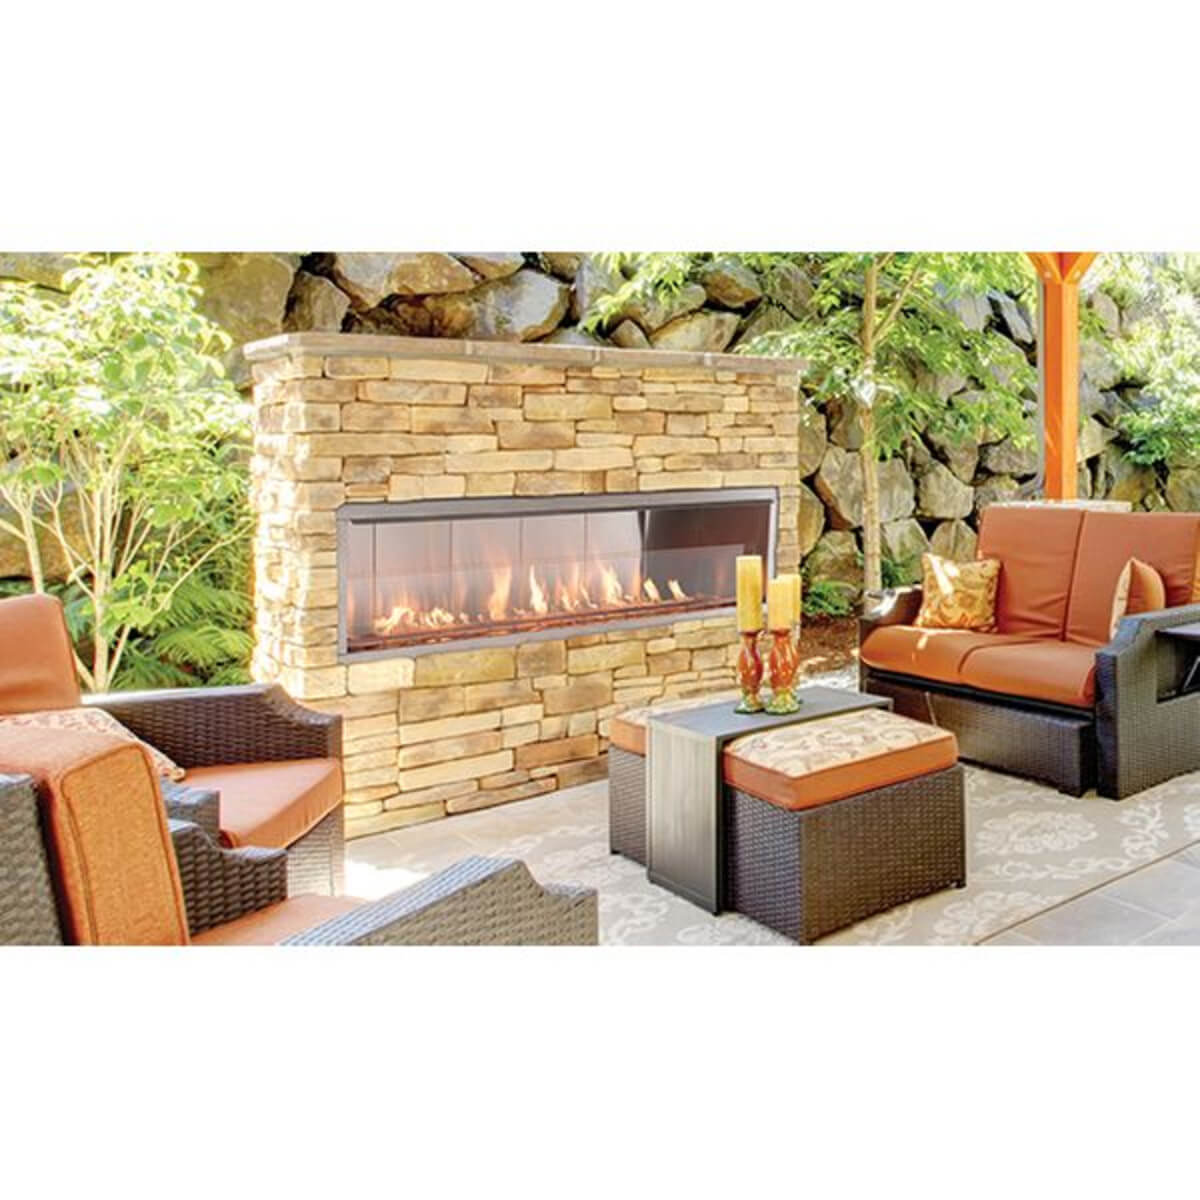 Best Outdoor Fireplace: Best Contemporary - Superior 48" Contemporary Vent-Free Linear Outdoor Fireplace ODLVF48ZEN